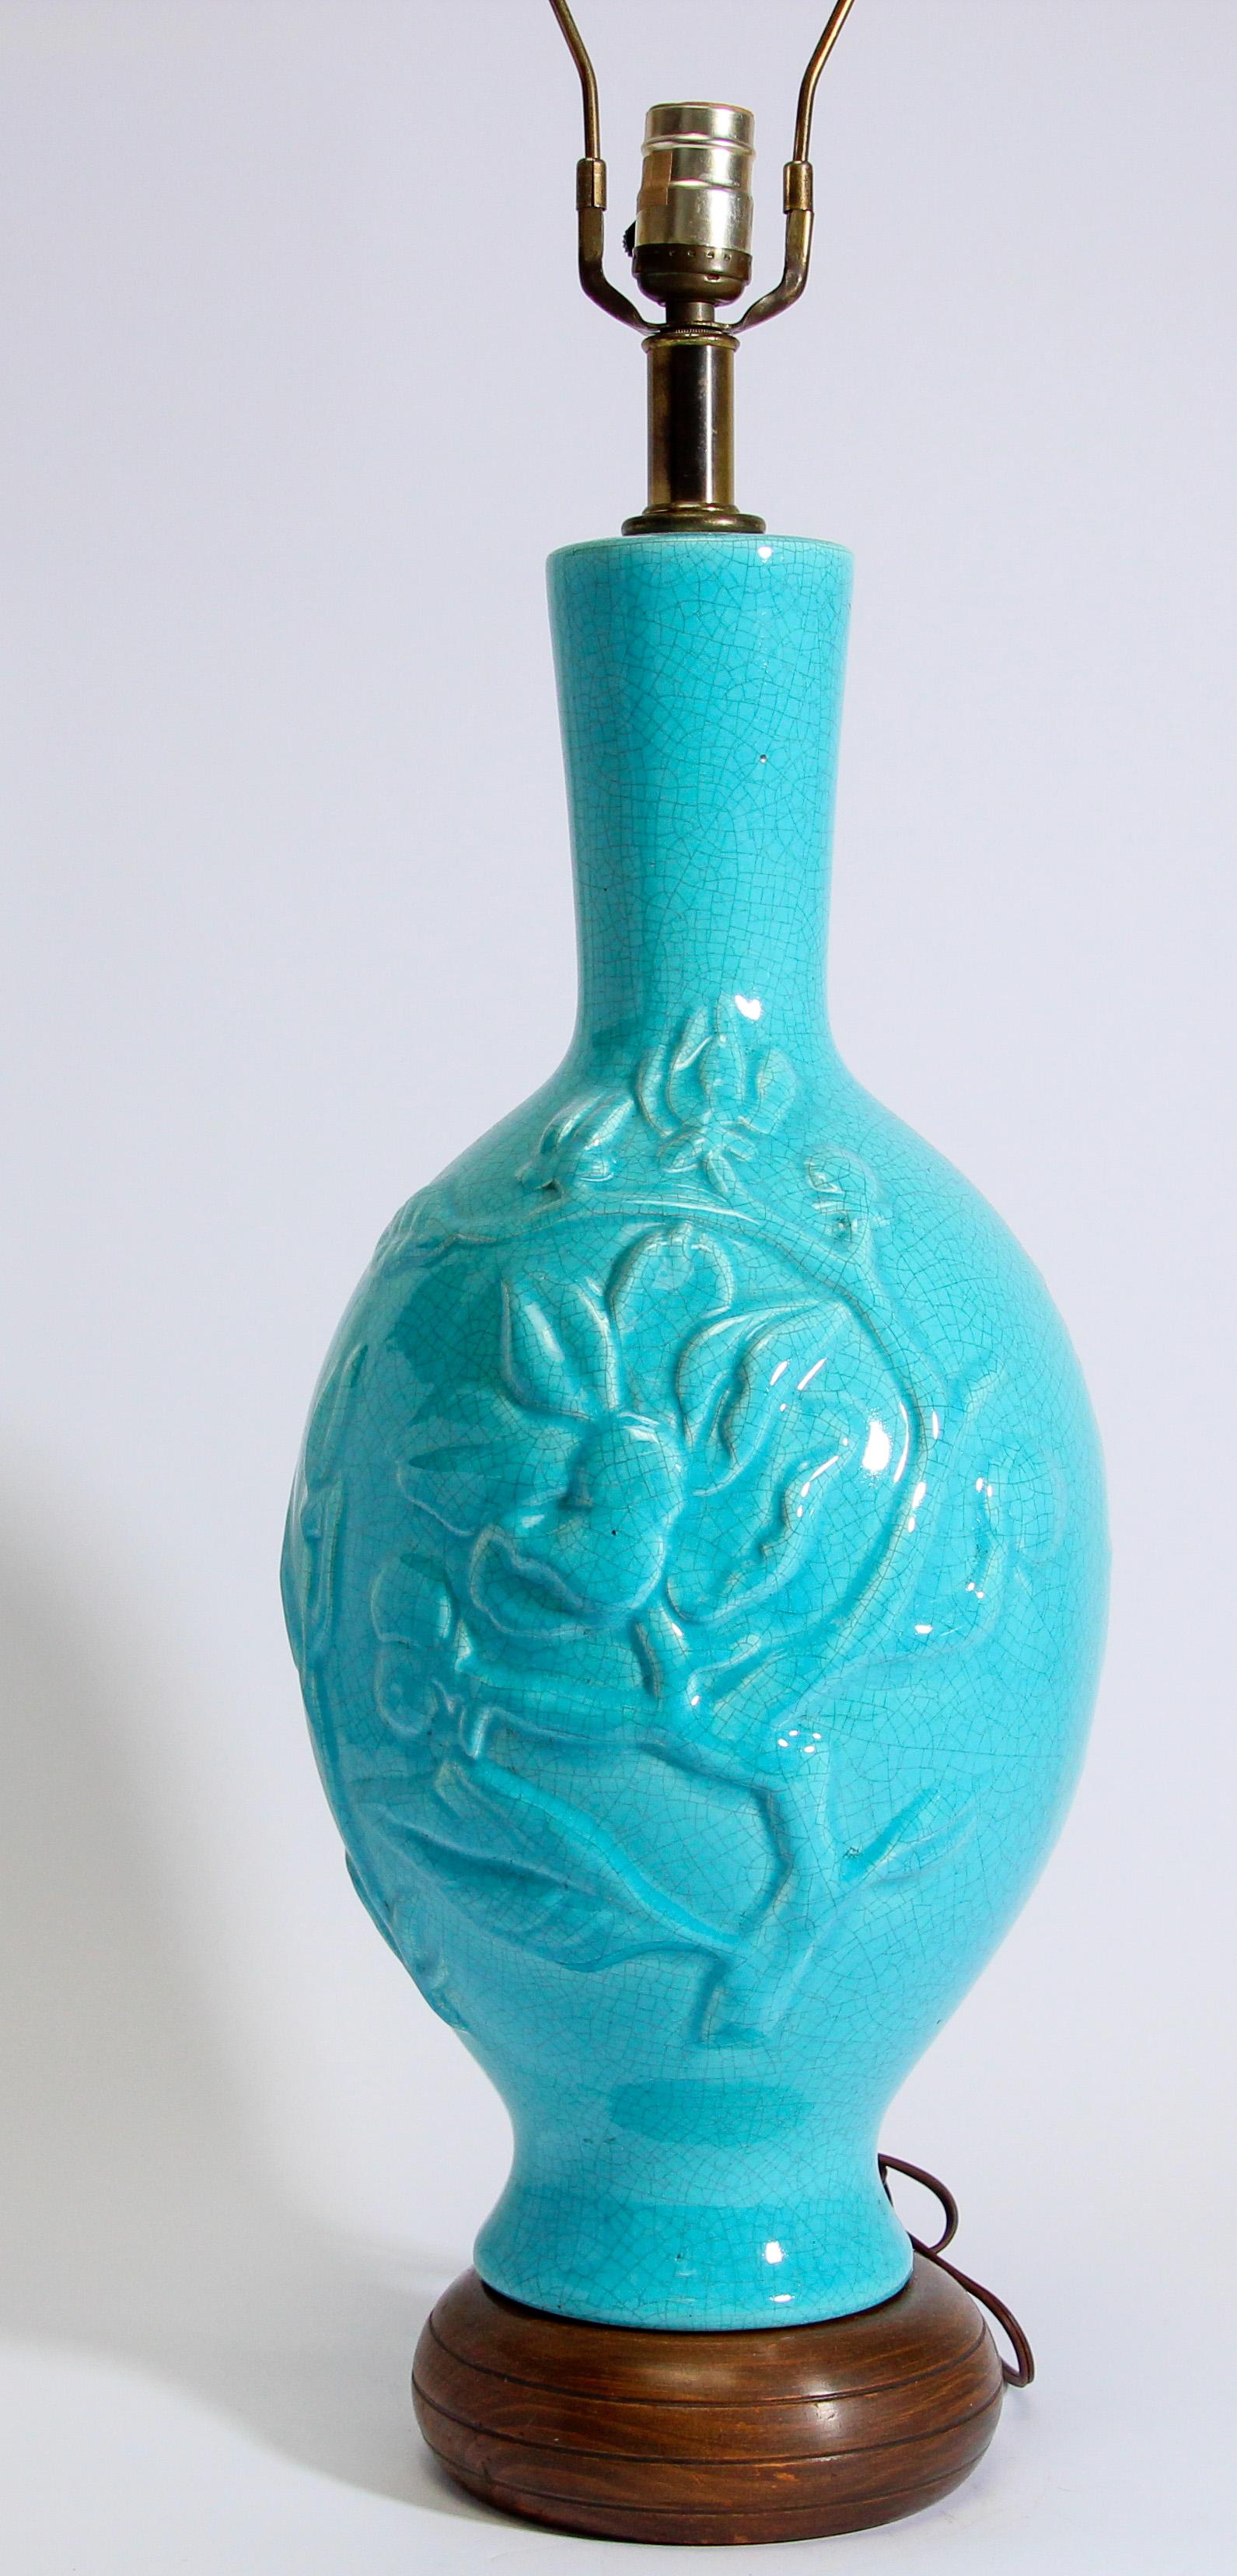 Vintage asiatischen orientalischen chinesischen glasierten Keramik Lampe in türkis Farbe mit Relief Laub und lachenden Buddha.
Diese schöne Chinoiserie-Tischlampe aus der Mitte des Jahrhunderts ist zeitlos.
Montiert auf Holzsockel.
Die Keramik ist